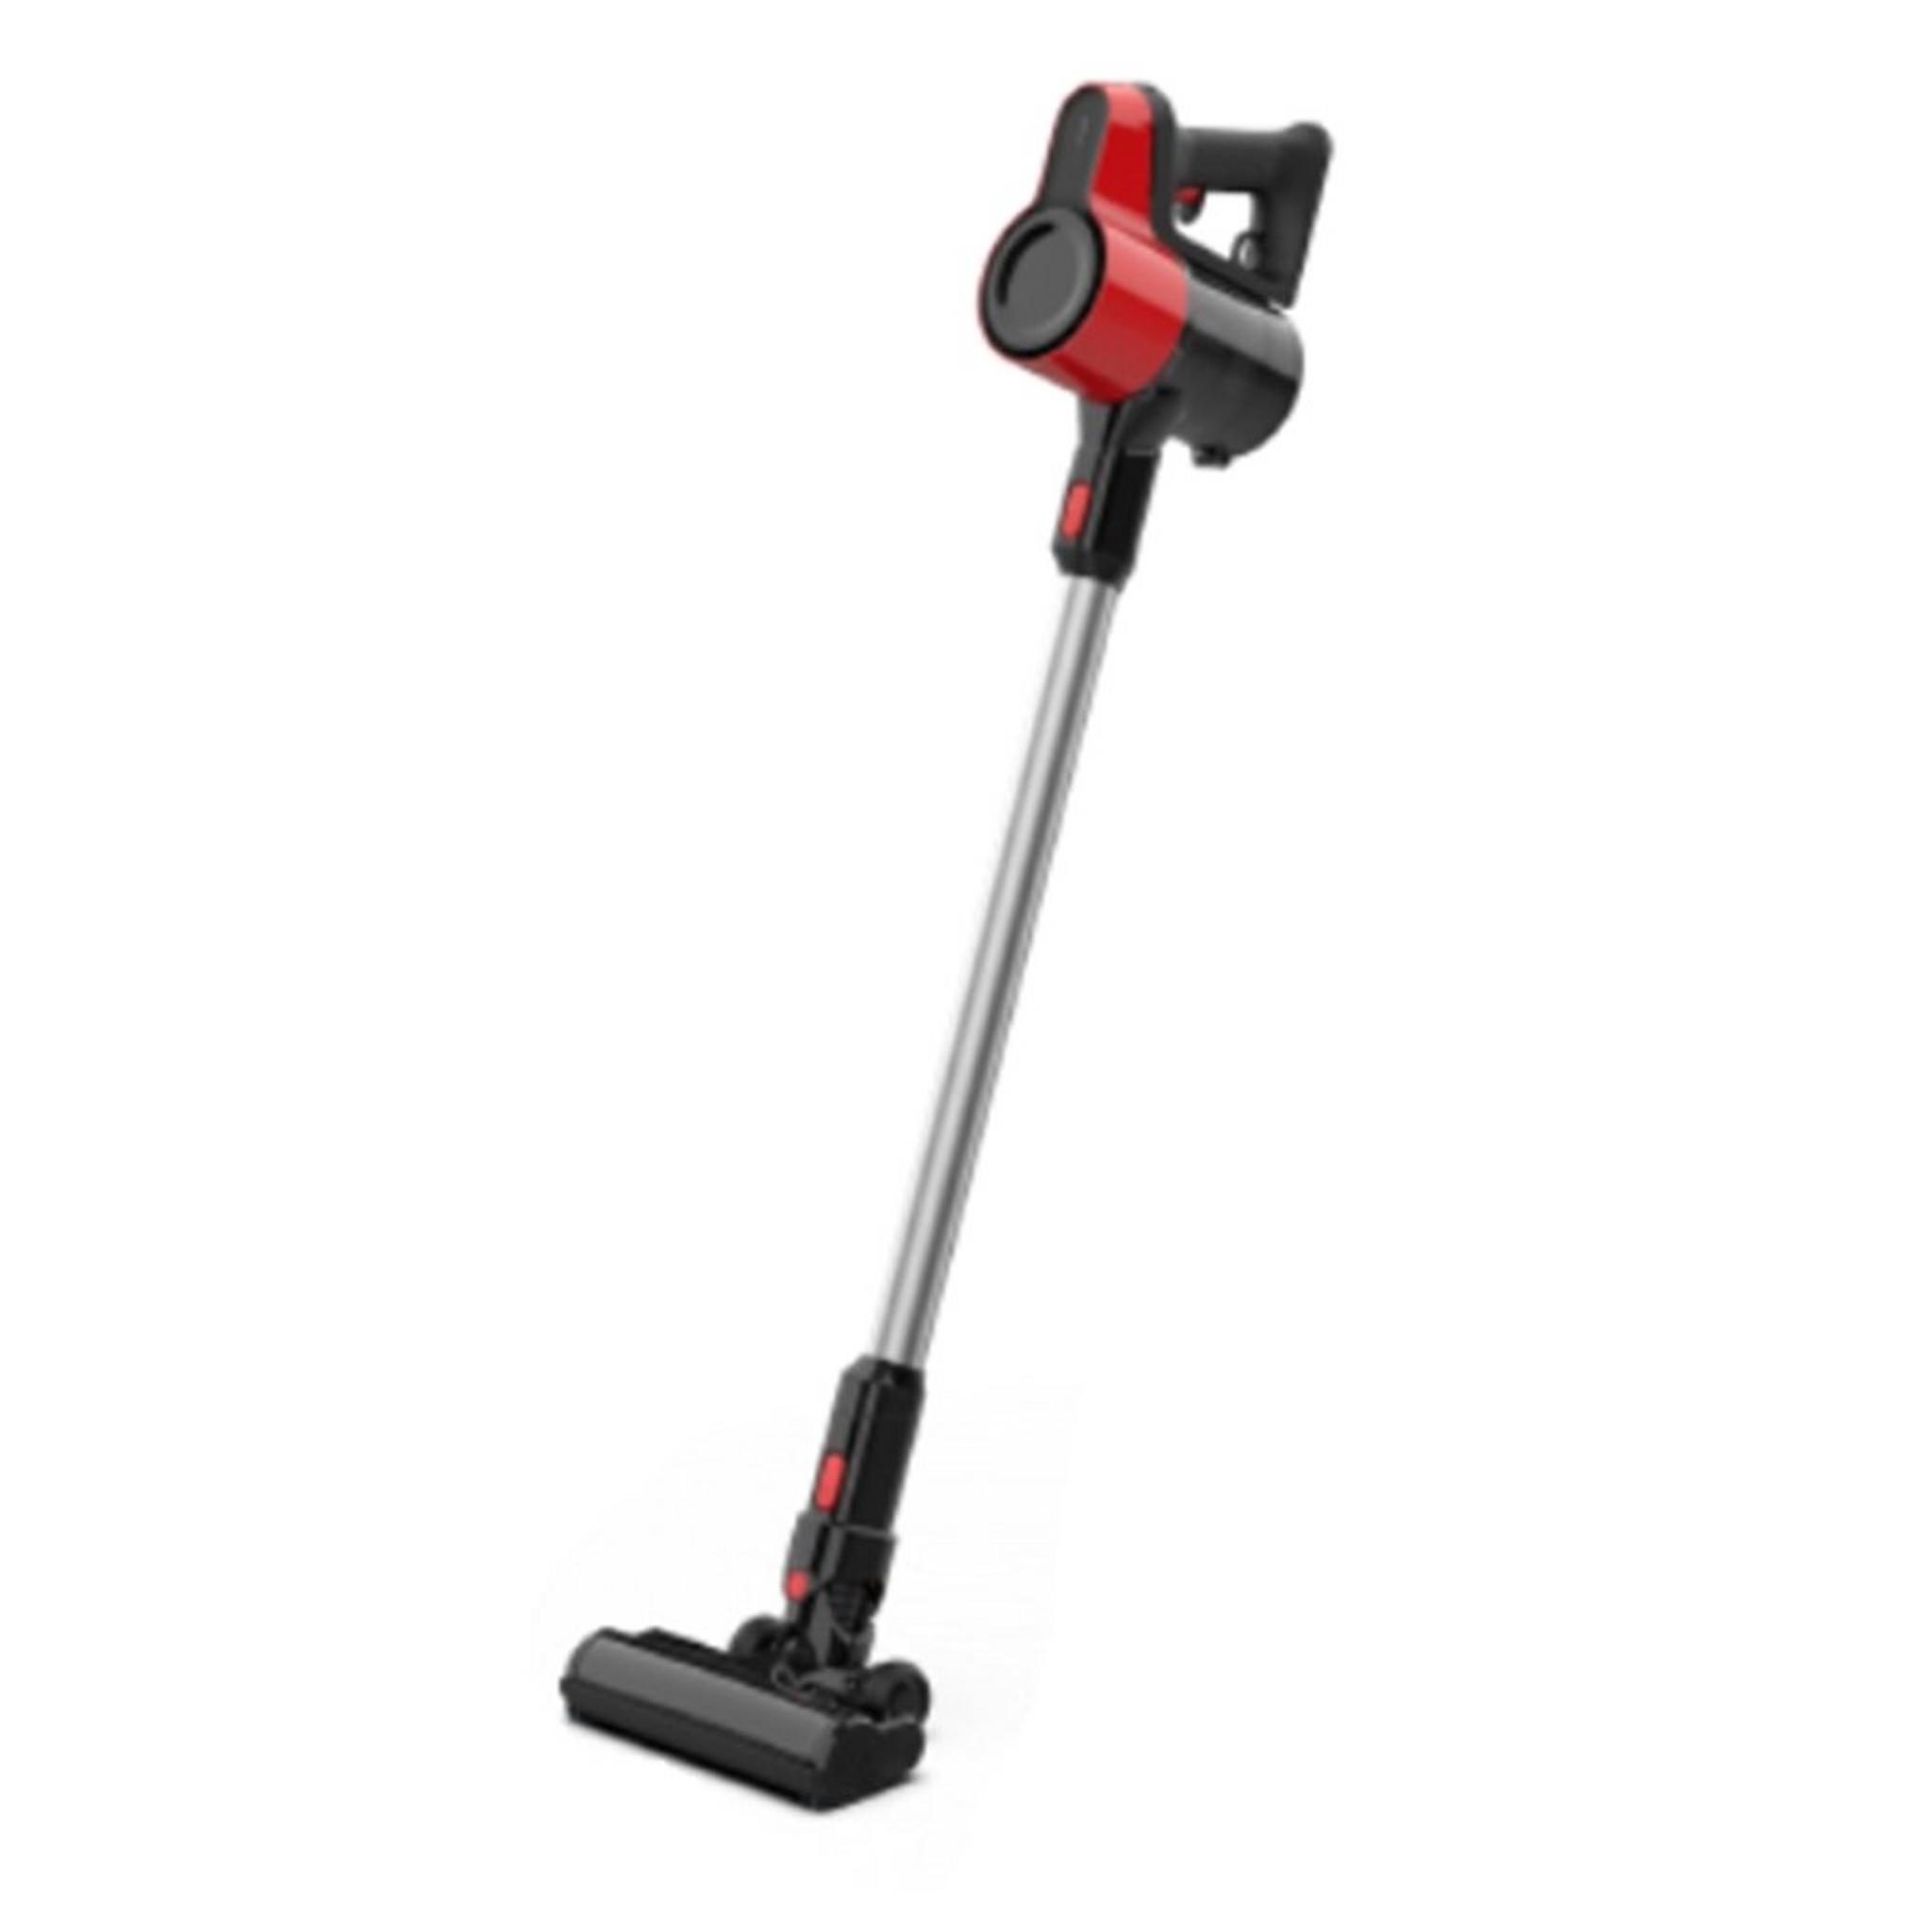 Beko Cordless Vacuum Cleaner, 110W, 0.6 Liter, VRT50121VR - Black/Red